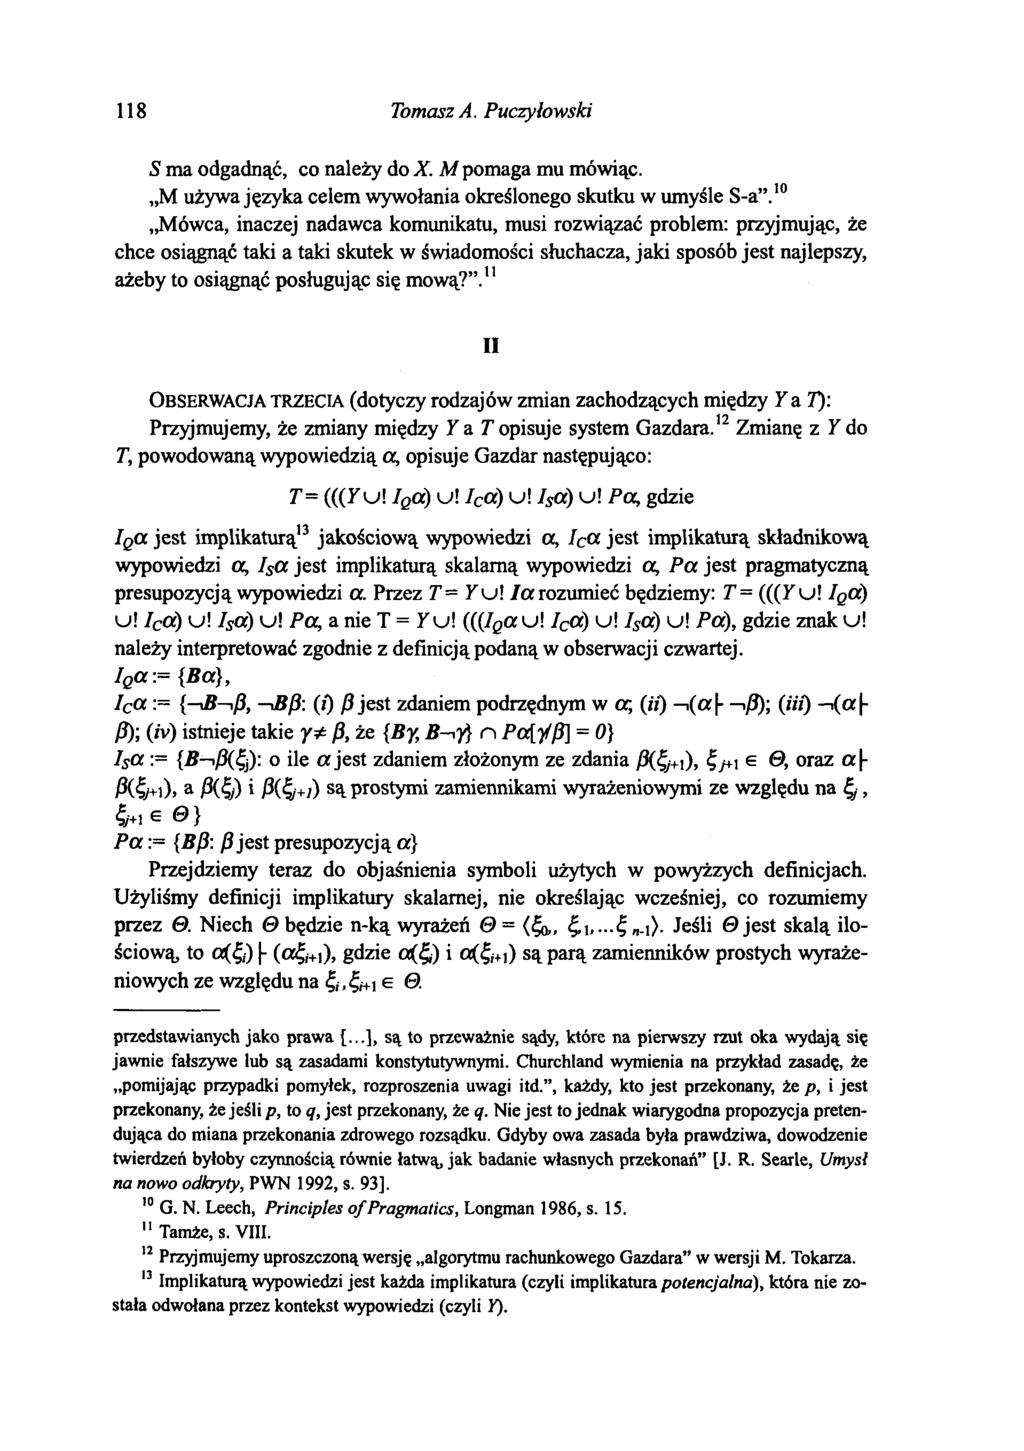 118 Tomasz A. Puczyłowski S ma odgadnąć, co należy do X. M pomaga mu mówiąc. M używa języka celem wywołania określonego skutku w umyśle S-a.